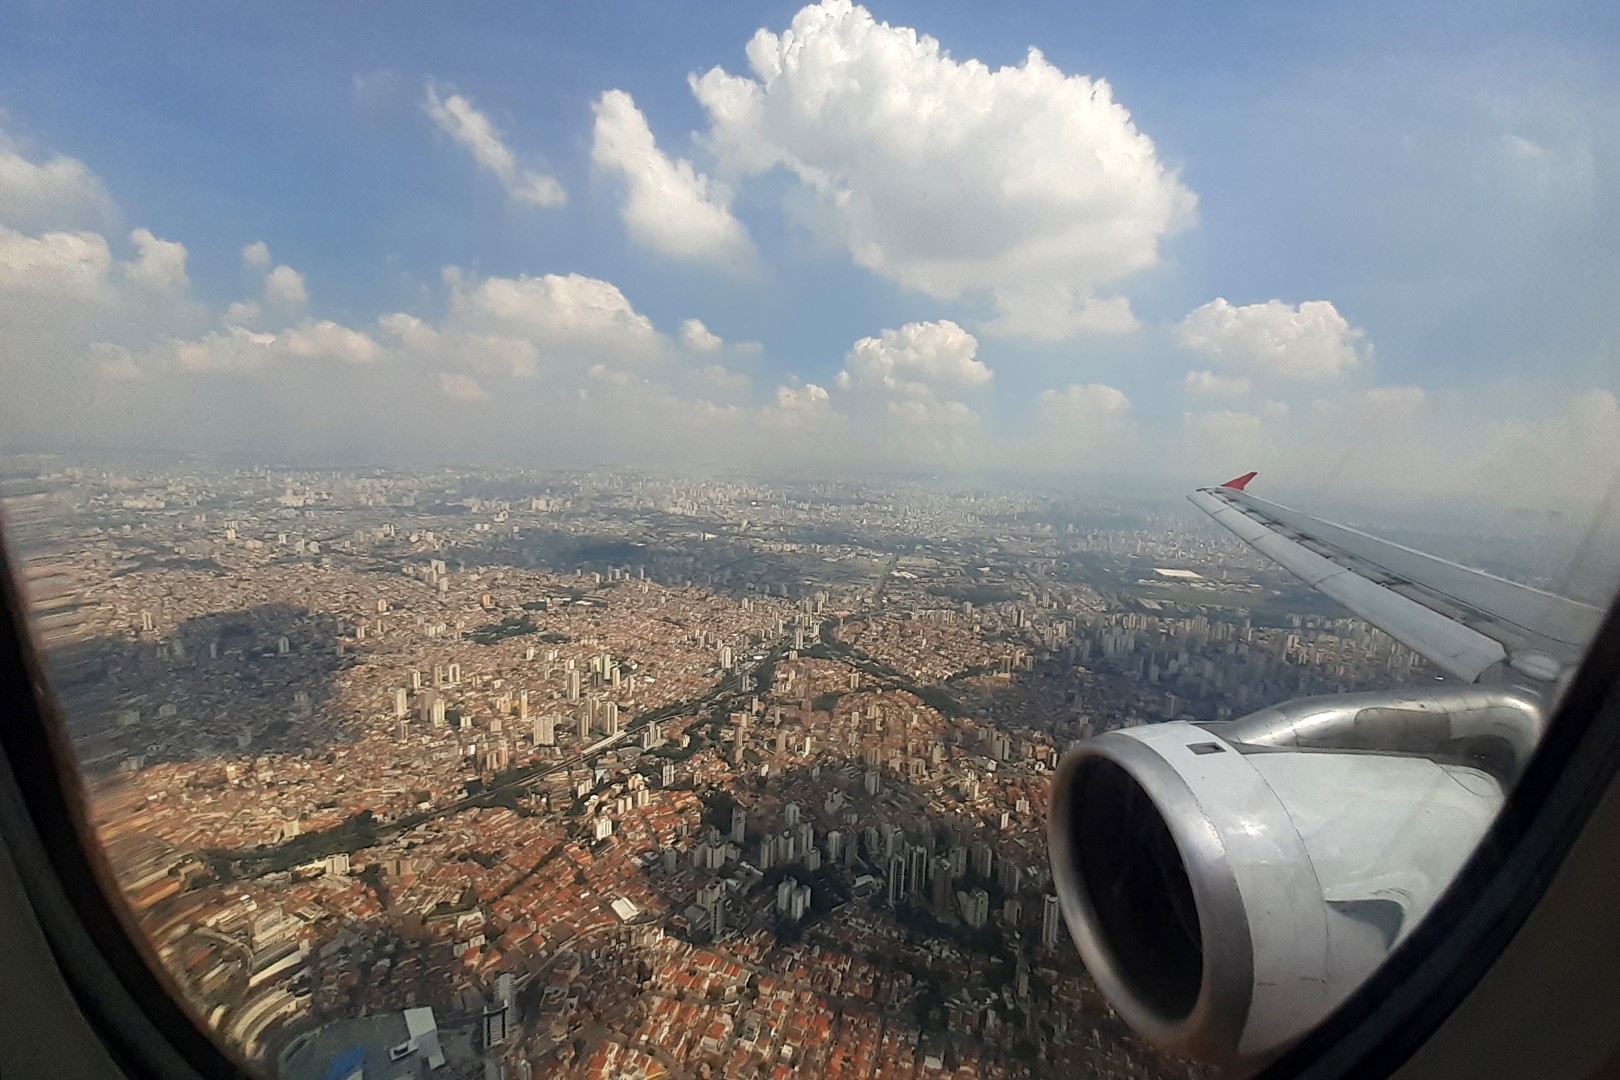 Landing in São Paulo